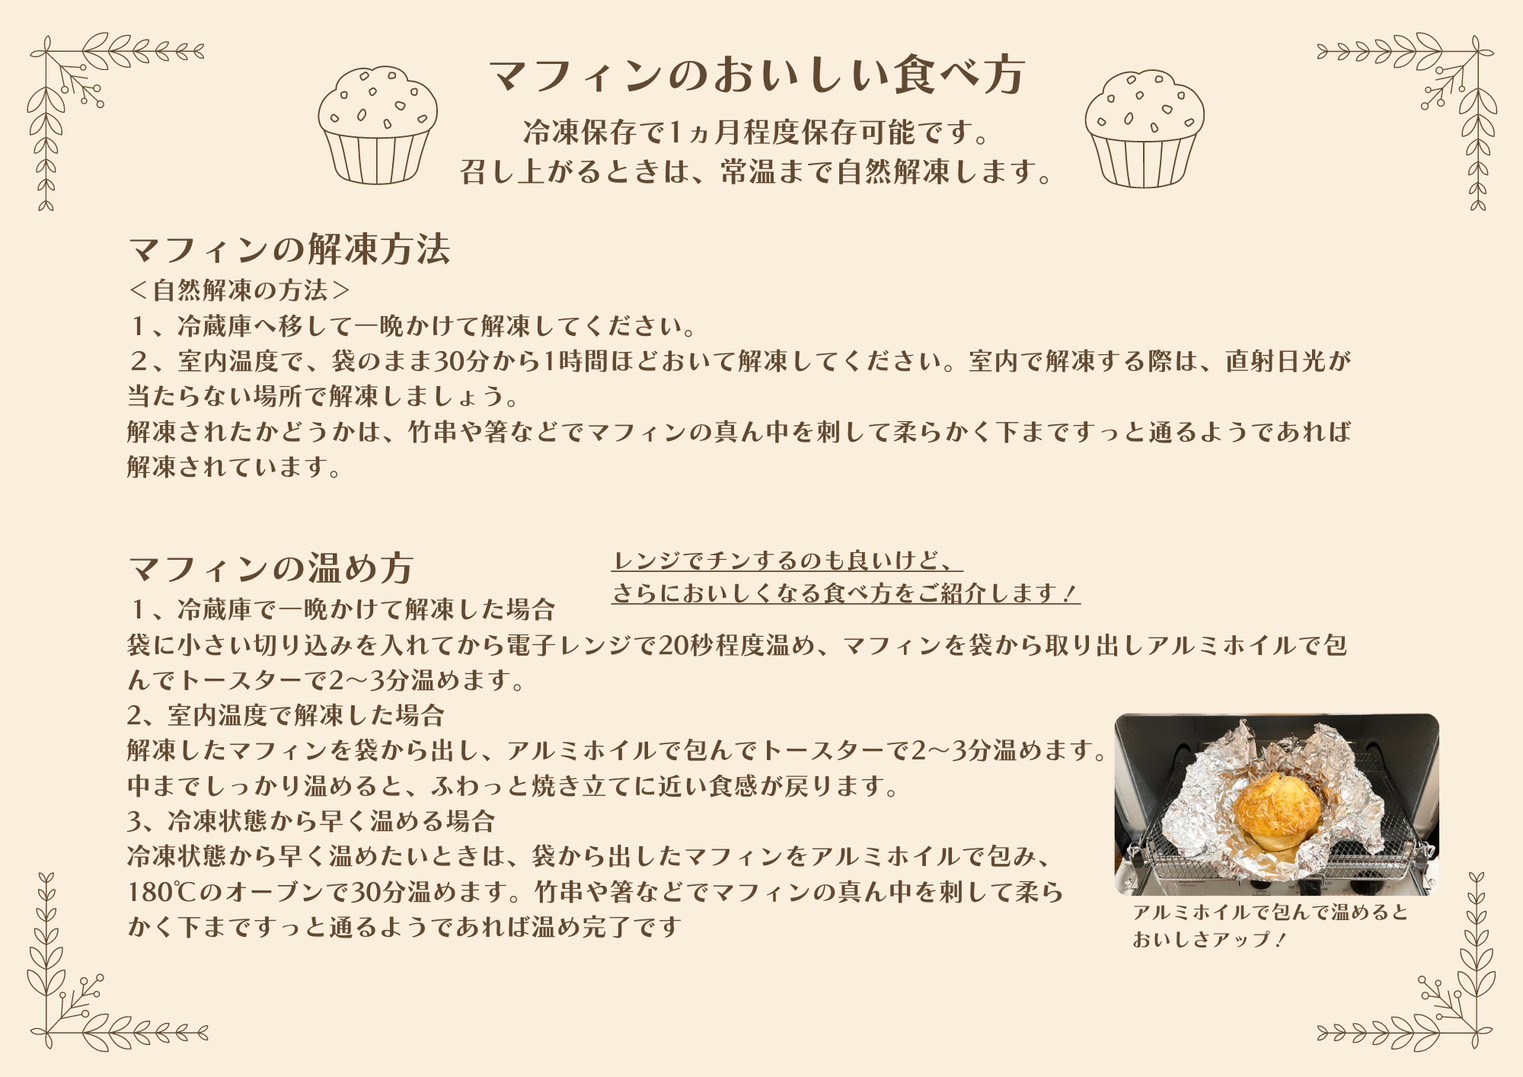 《北海道産バター使用》ミネット アメリカンマフィン 12個セット スイーツマフィンとおかずマフィン6種類詰め合わせ [スイーツ 焼き菓子 惣菜パン] TF0660